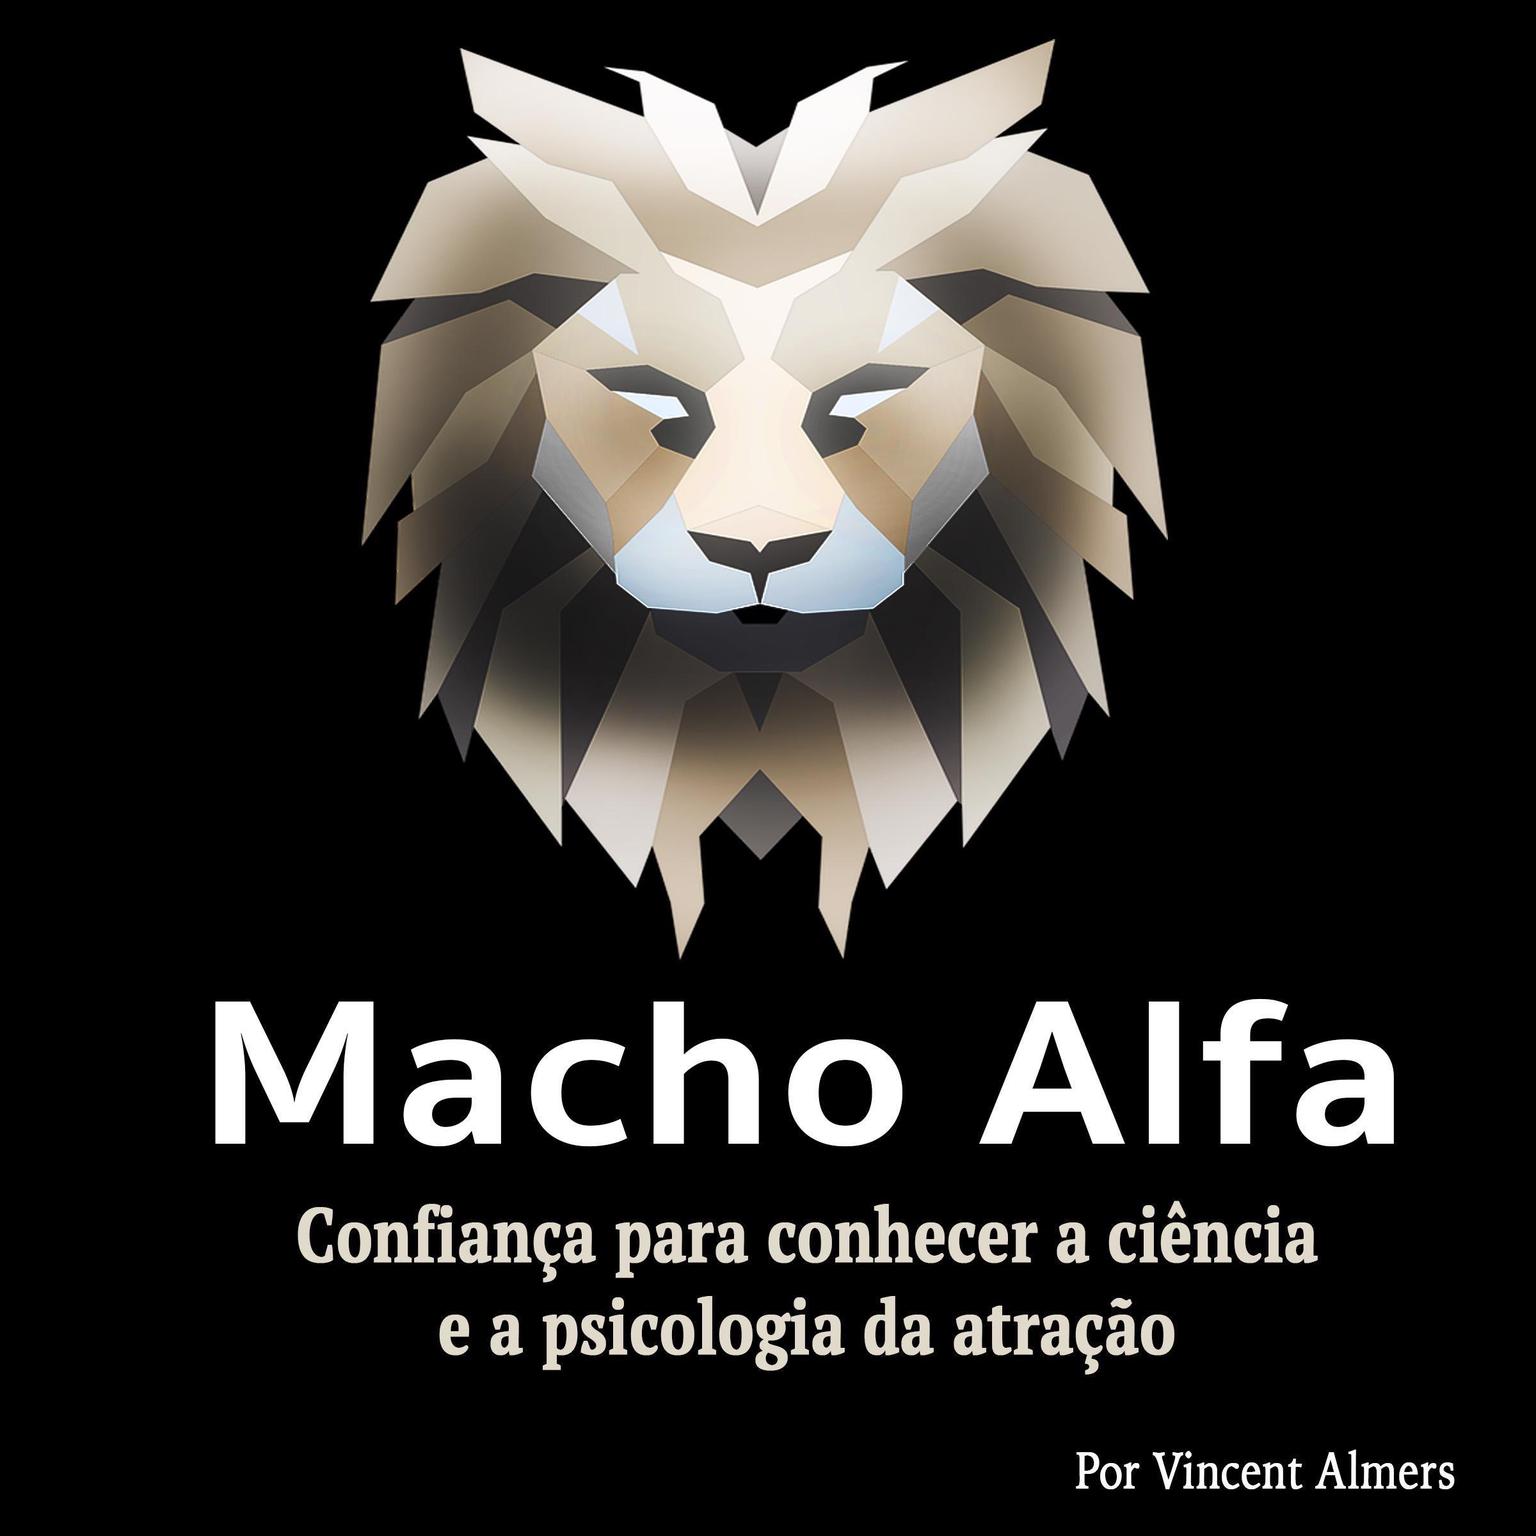 Macho alfa: Confiança para conhecer a ciência e a psicologia da atração (Portuguese Edition) Audiobook, by Vincent Almers